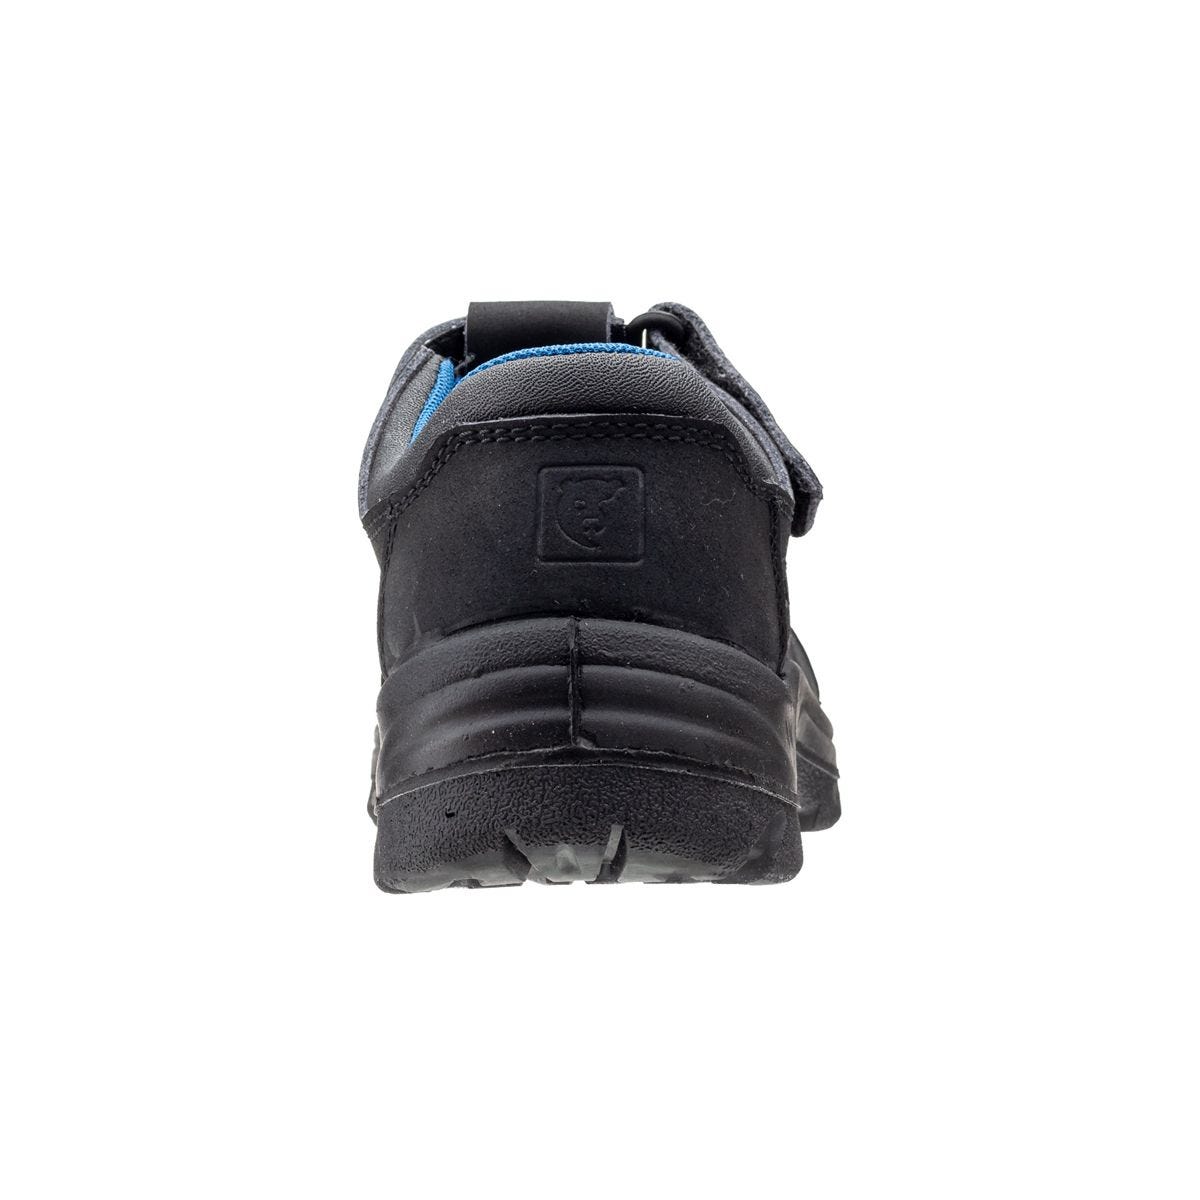 Sandales de travail basses Boni II Noir - Coverguard - Taille 48 2